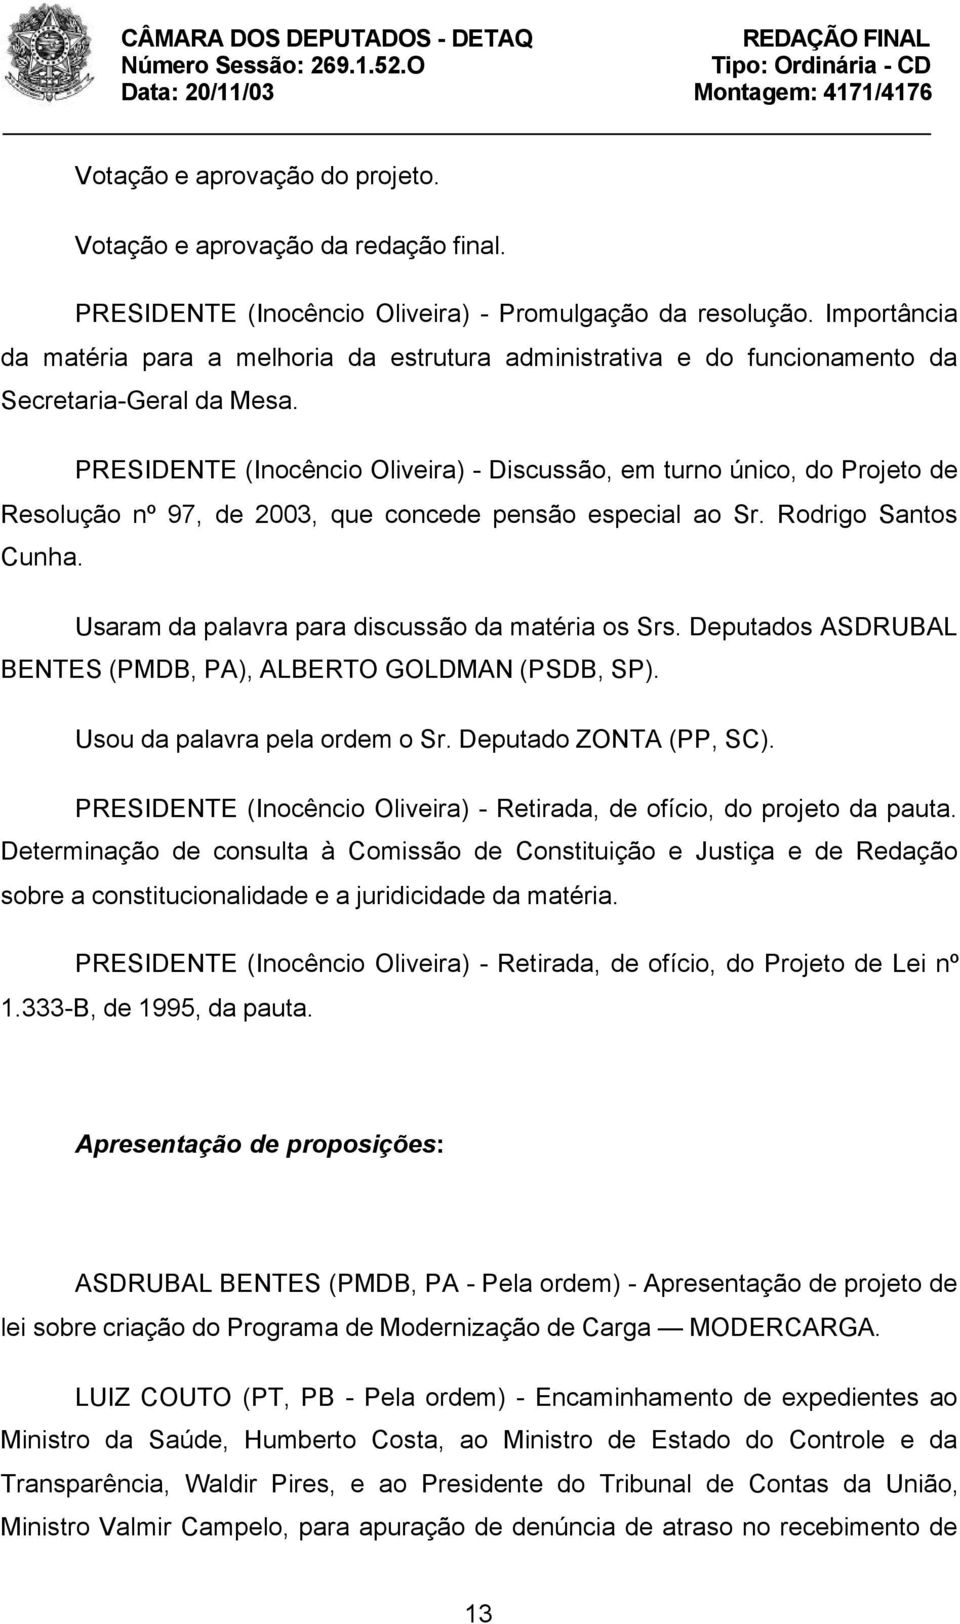 PRESIDENTE (Inocêncio Oliveira) - Discussão, em turno único, do Projeto de Resolução nº 97, de 2003, que concede pensão especial ao Sr. Rodrigo Santos Cunha.